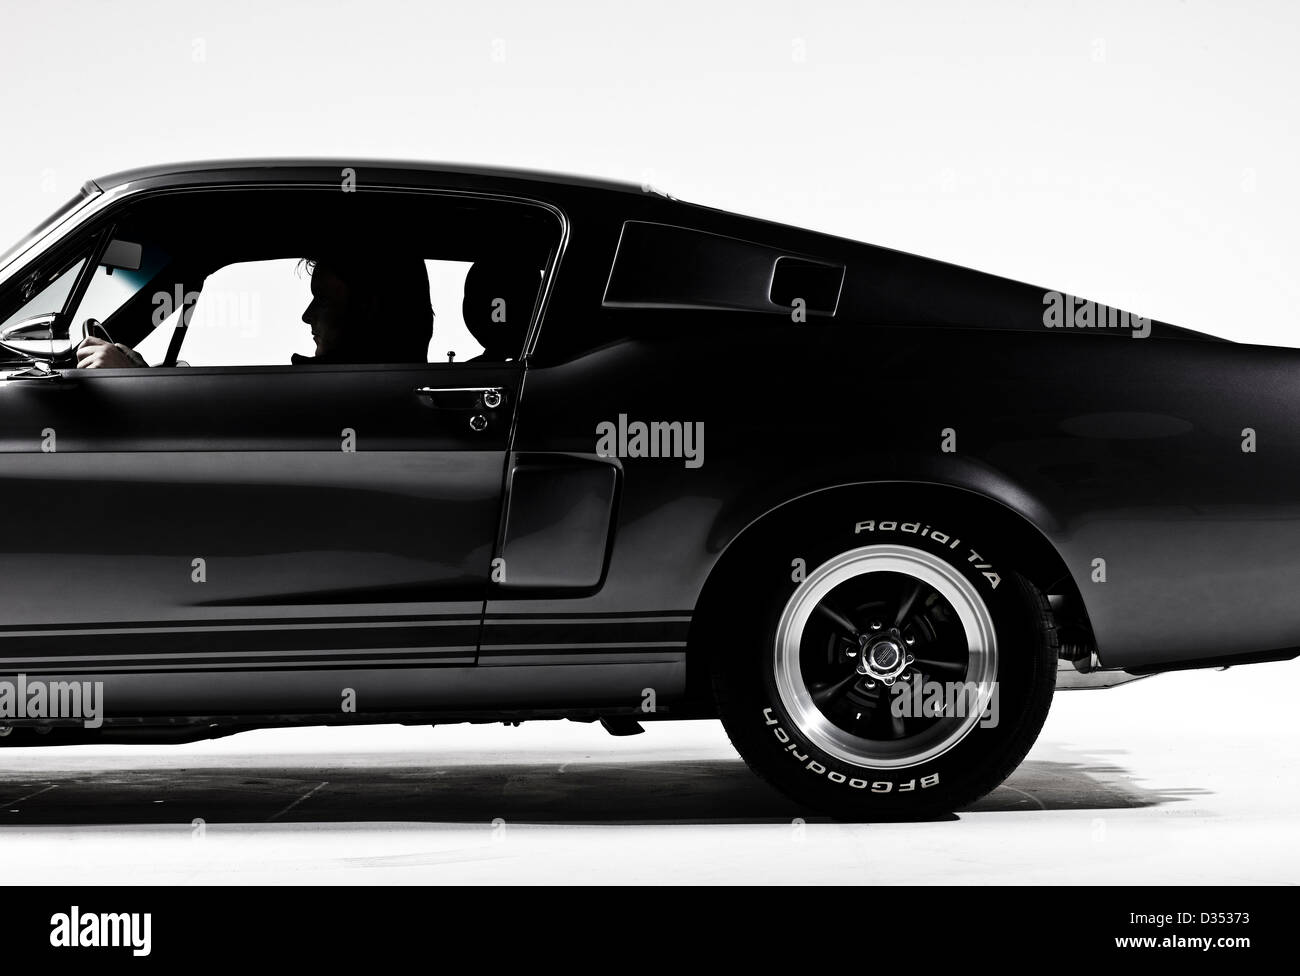 Dark grey Shelby Mustang GT 350 2-door sports car Stock Photo